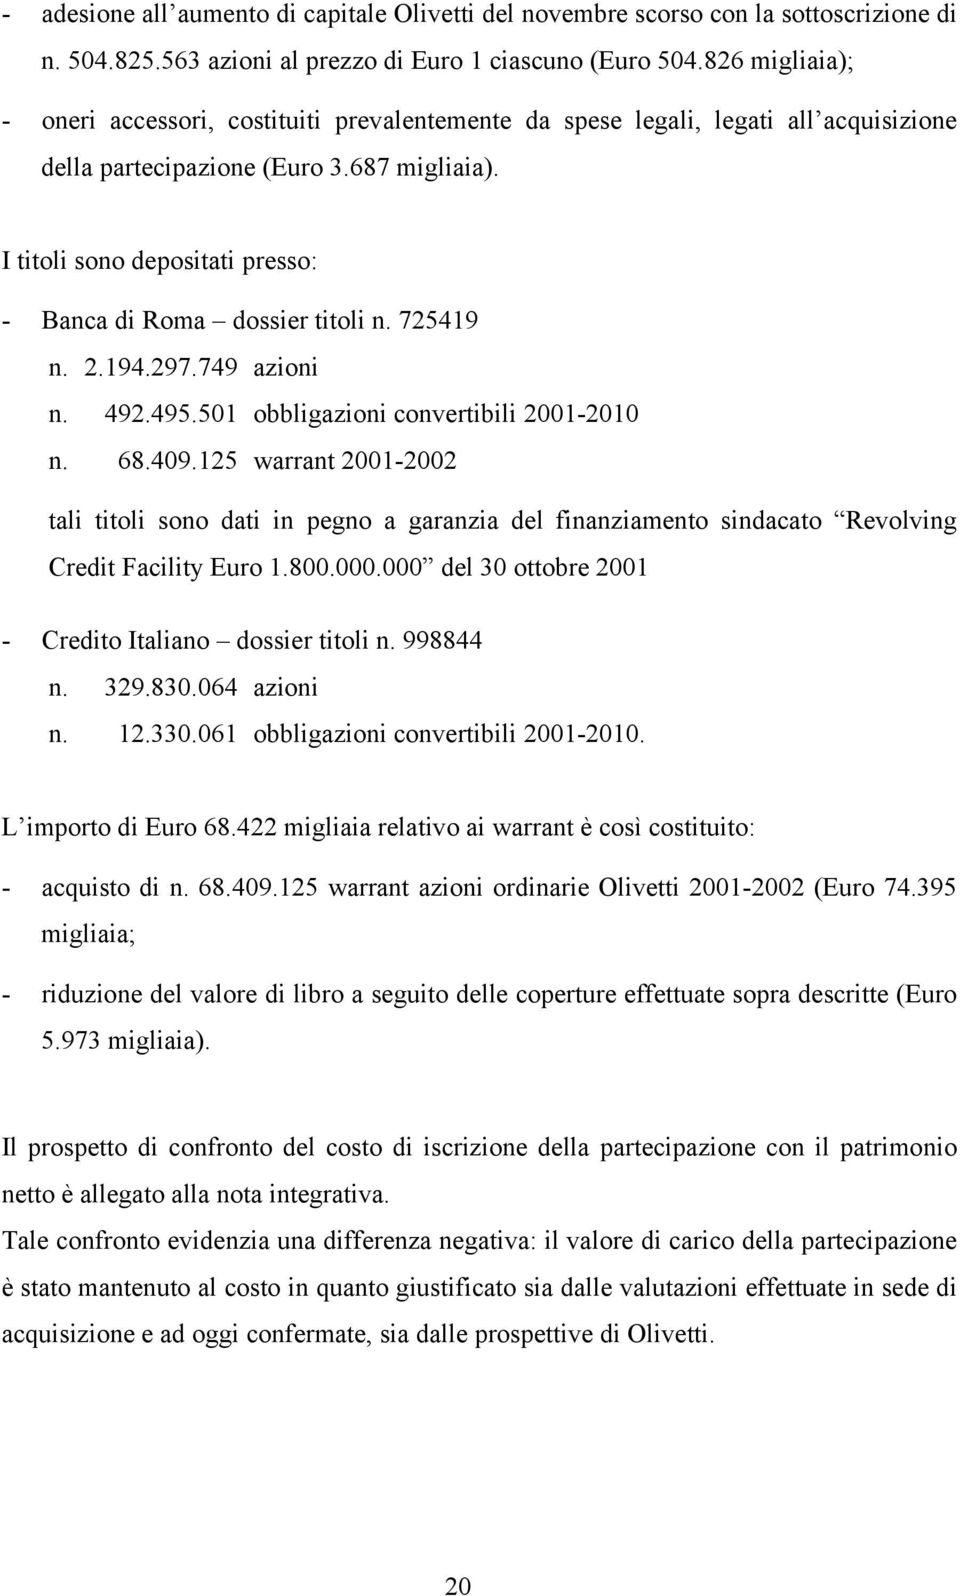 I titoli sono depositati presso: - Banca di Roma dossier titoli n. 725419 n. 2.194.297.749 azioni n. 492.495.501 obbligazioni convertibili 2001-2010 n. 68.409.